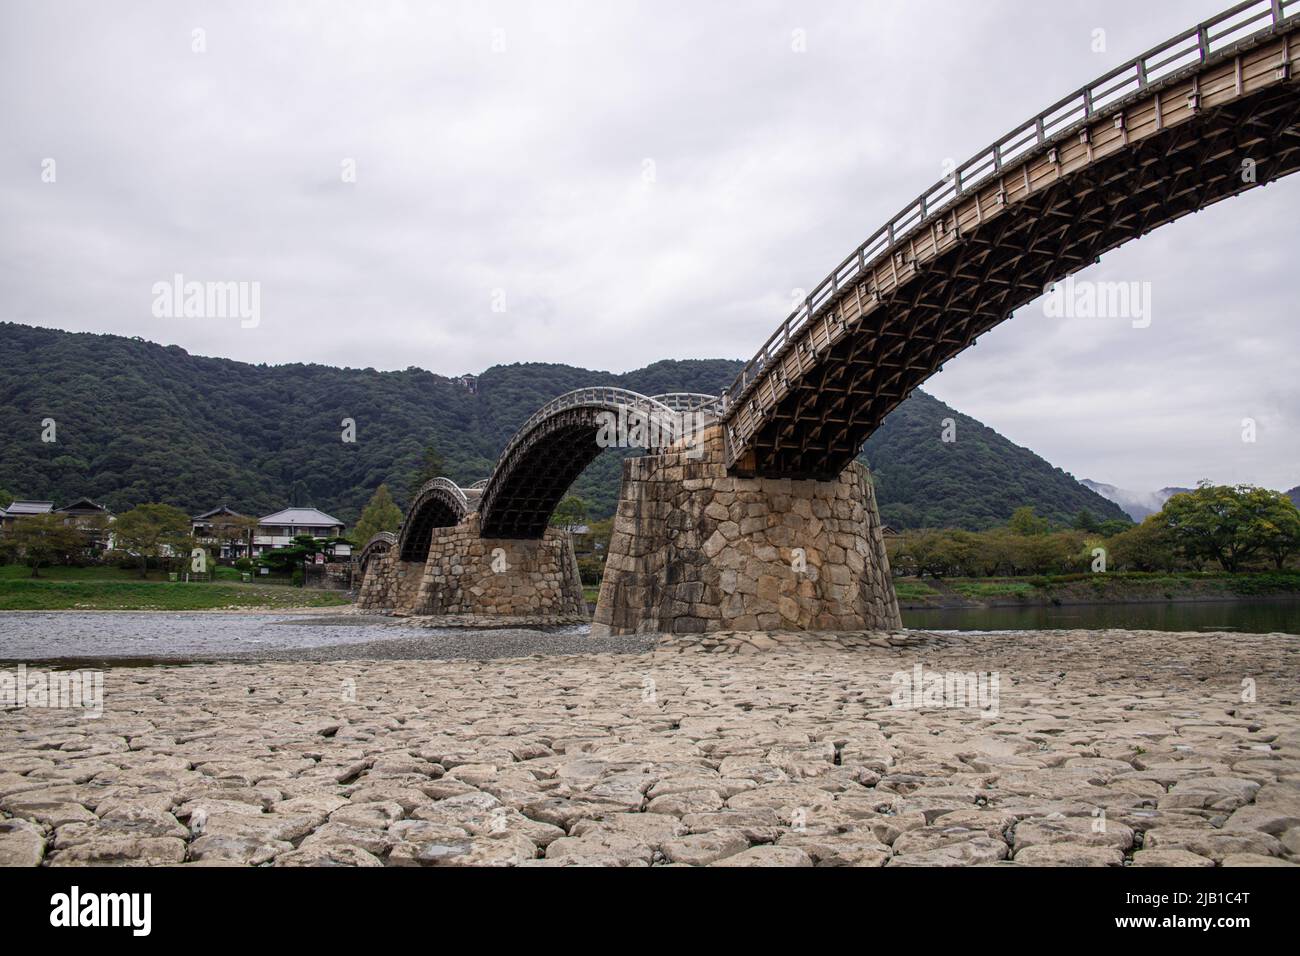 Il ponte Kintai (Kintaikyo), storico ponte ad arco in legno a Iwakuni, nelle giornate nuvolose. Il ponte fu costruito nel 1673, lungo il fiume Nishiki Foto Stock